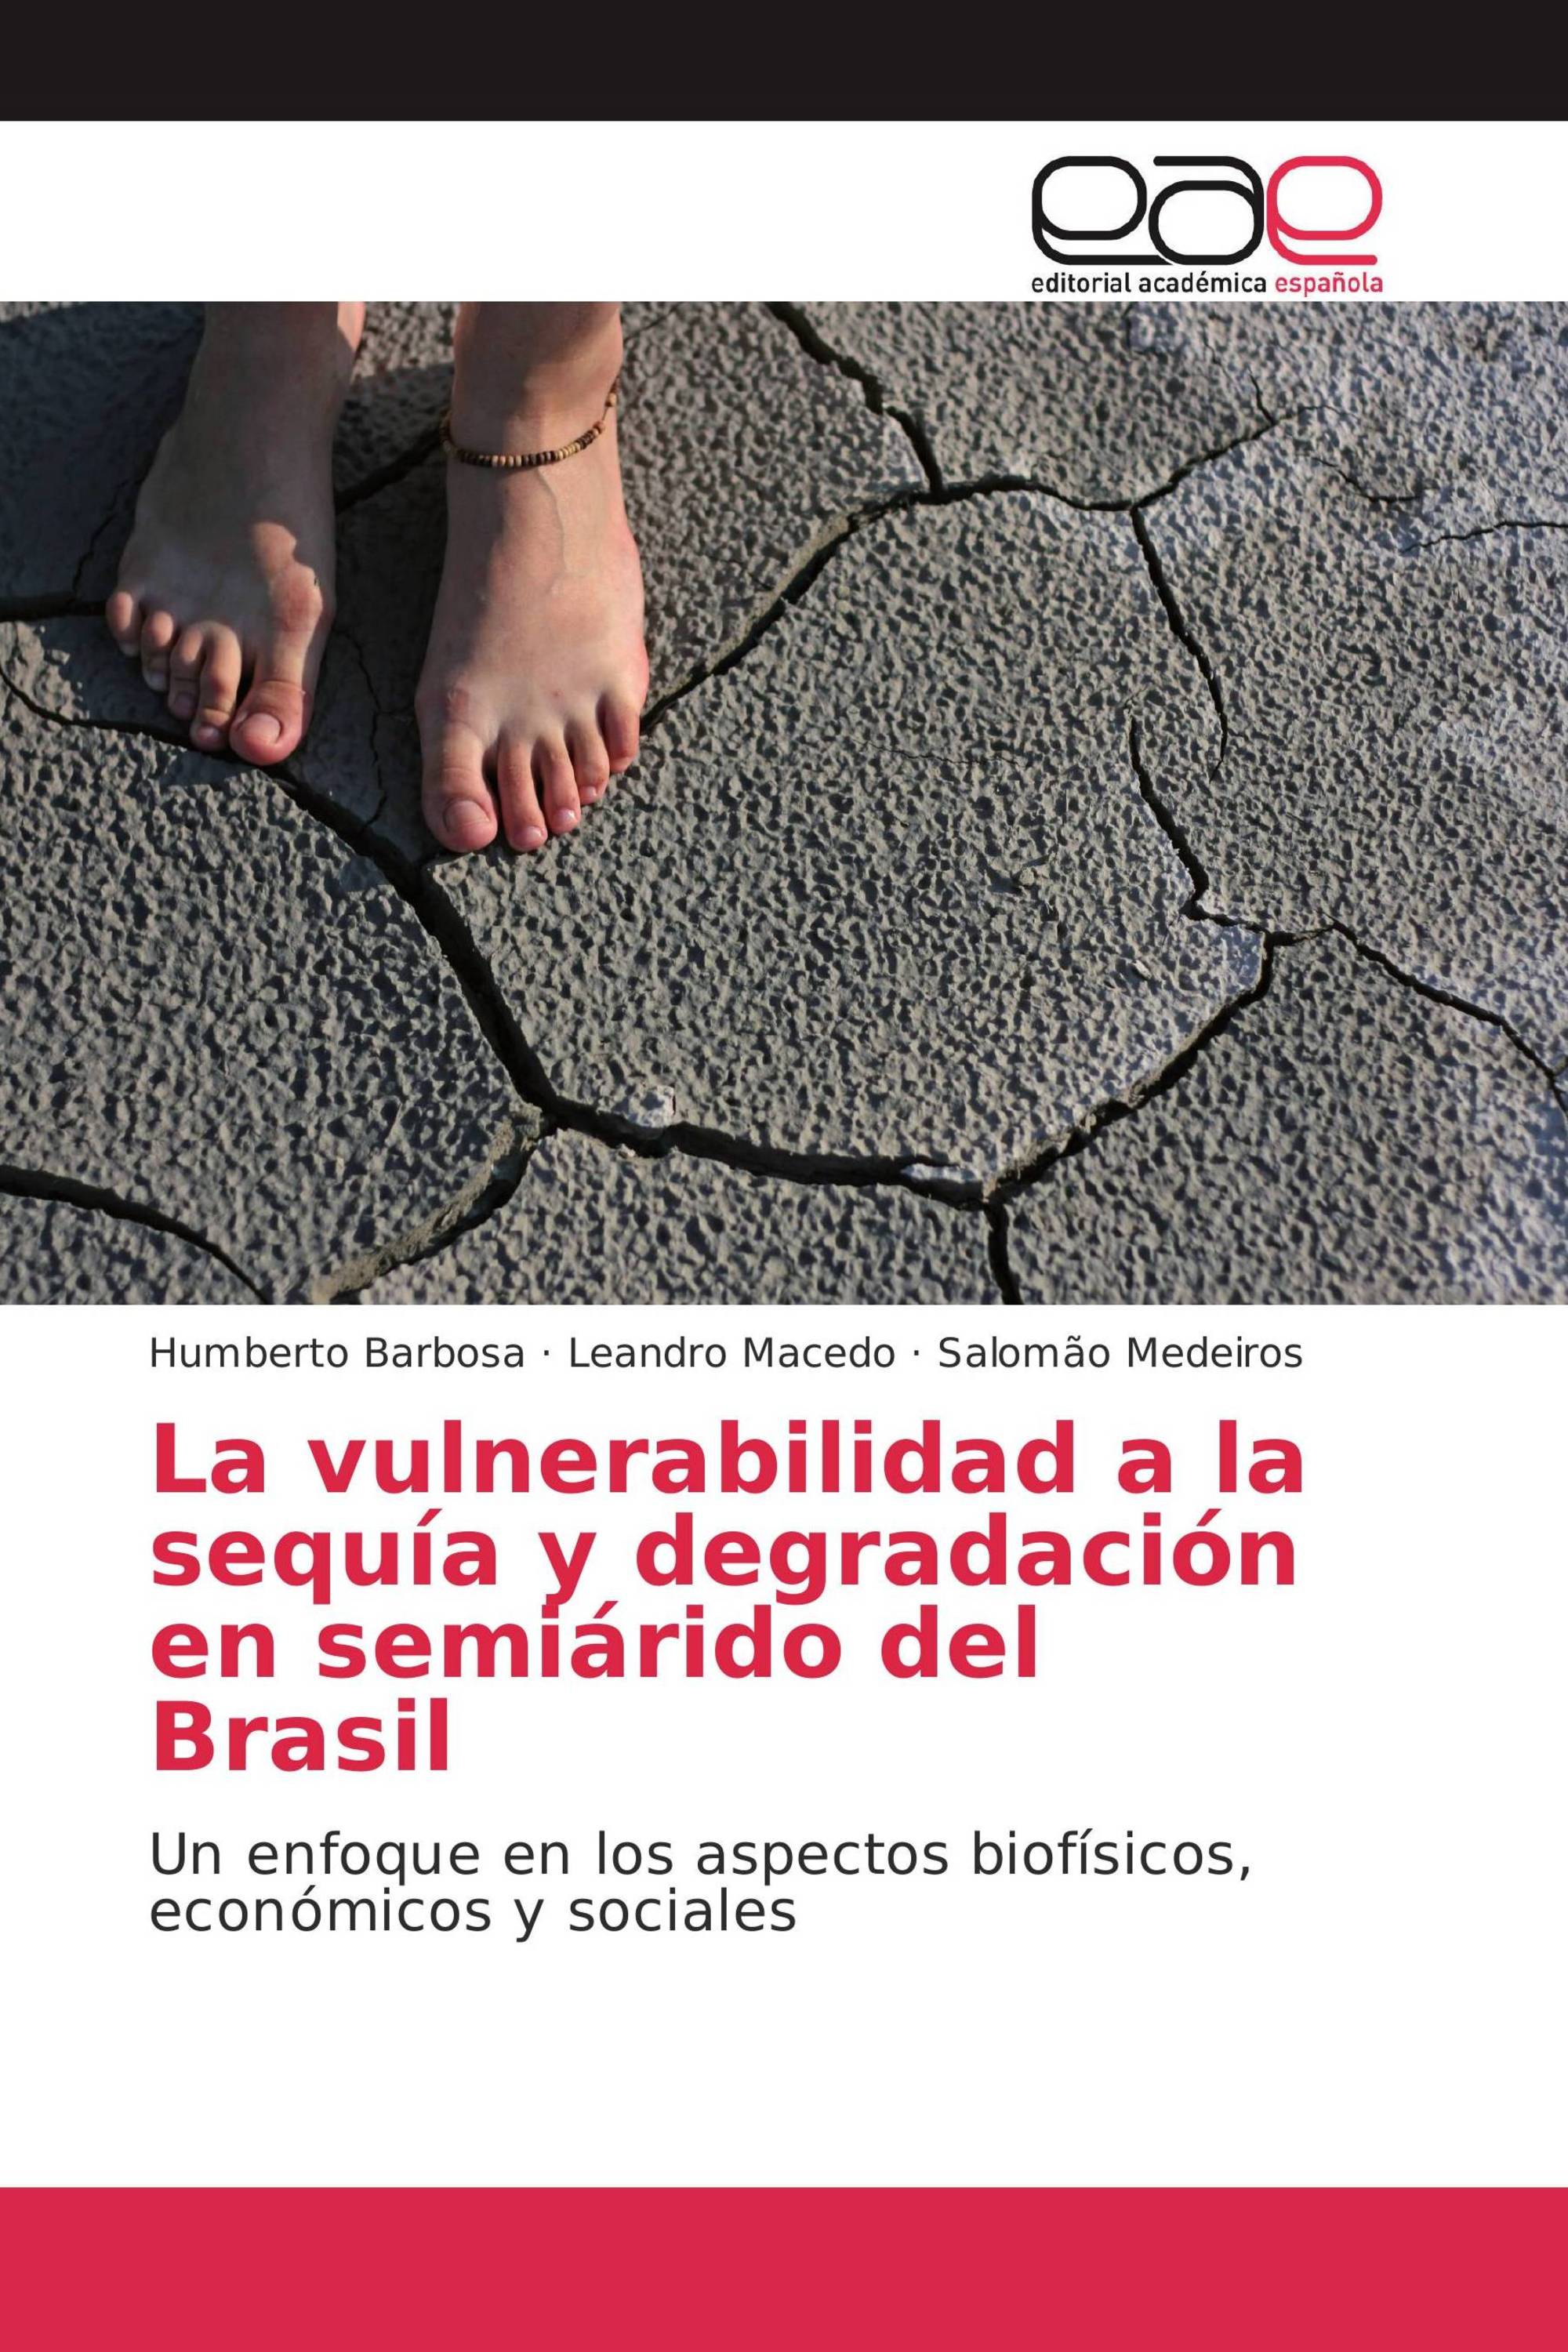 La vulnerabilidad a la sequía y degradación en semiárido del Brasil